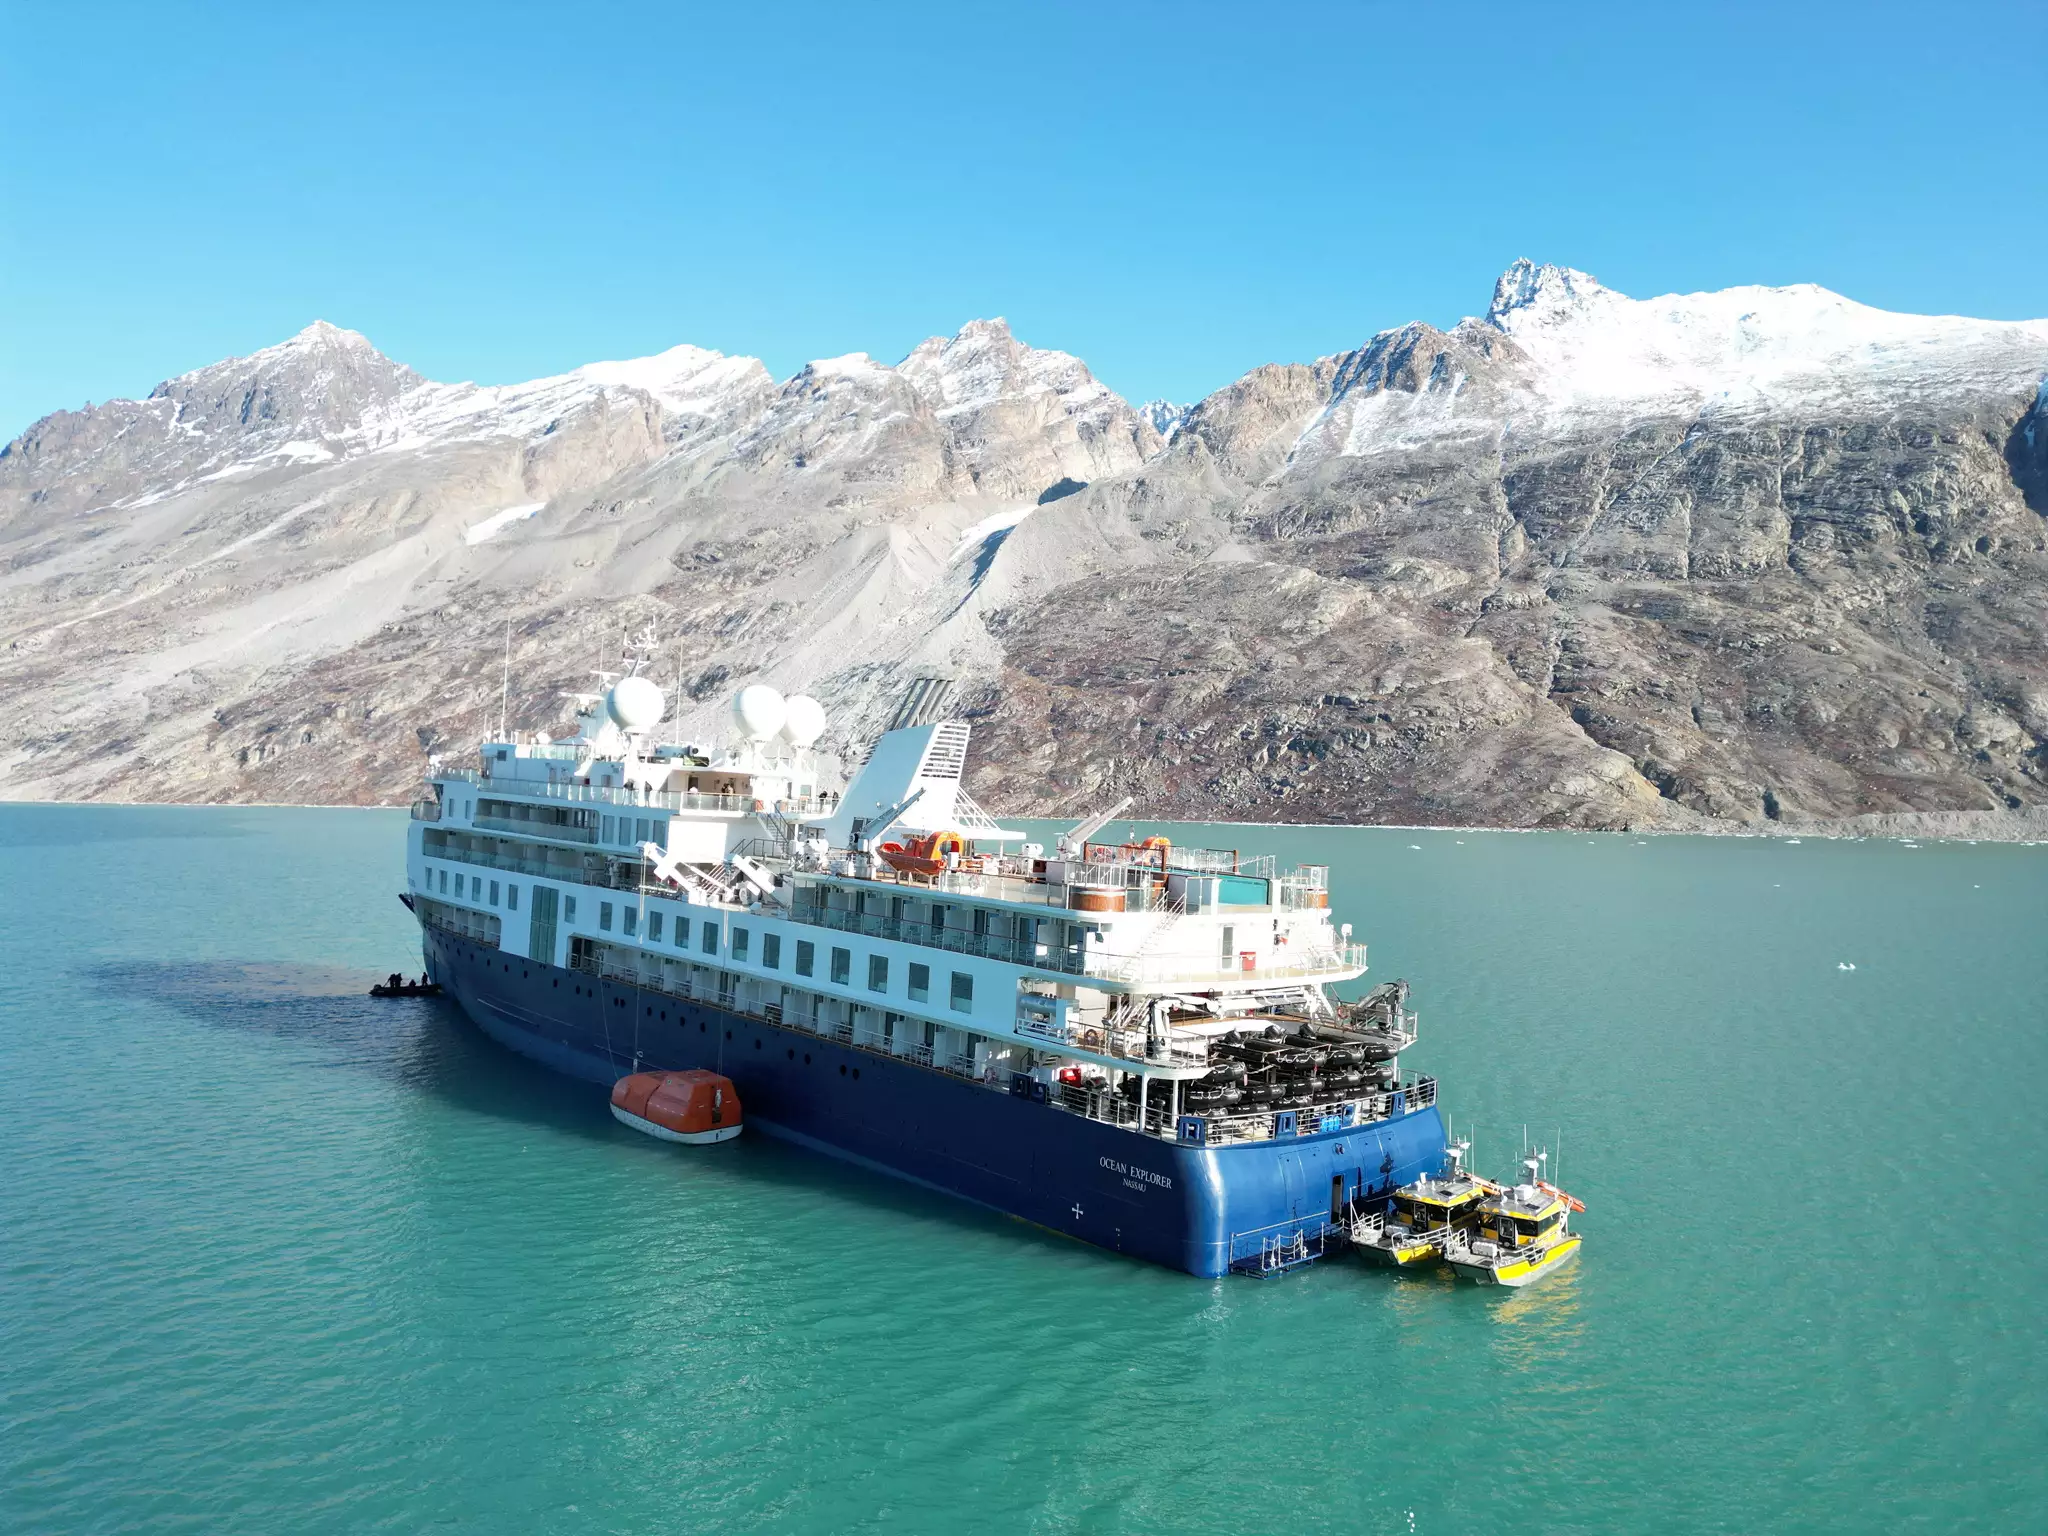 Γροιλανδία: Αποκολλήθηκε μετά από 3 ημέρες κρουαζιερόπλοιο με 206 επιβαίνοντες που προσάραξε σε απομονωμένη περιοχή